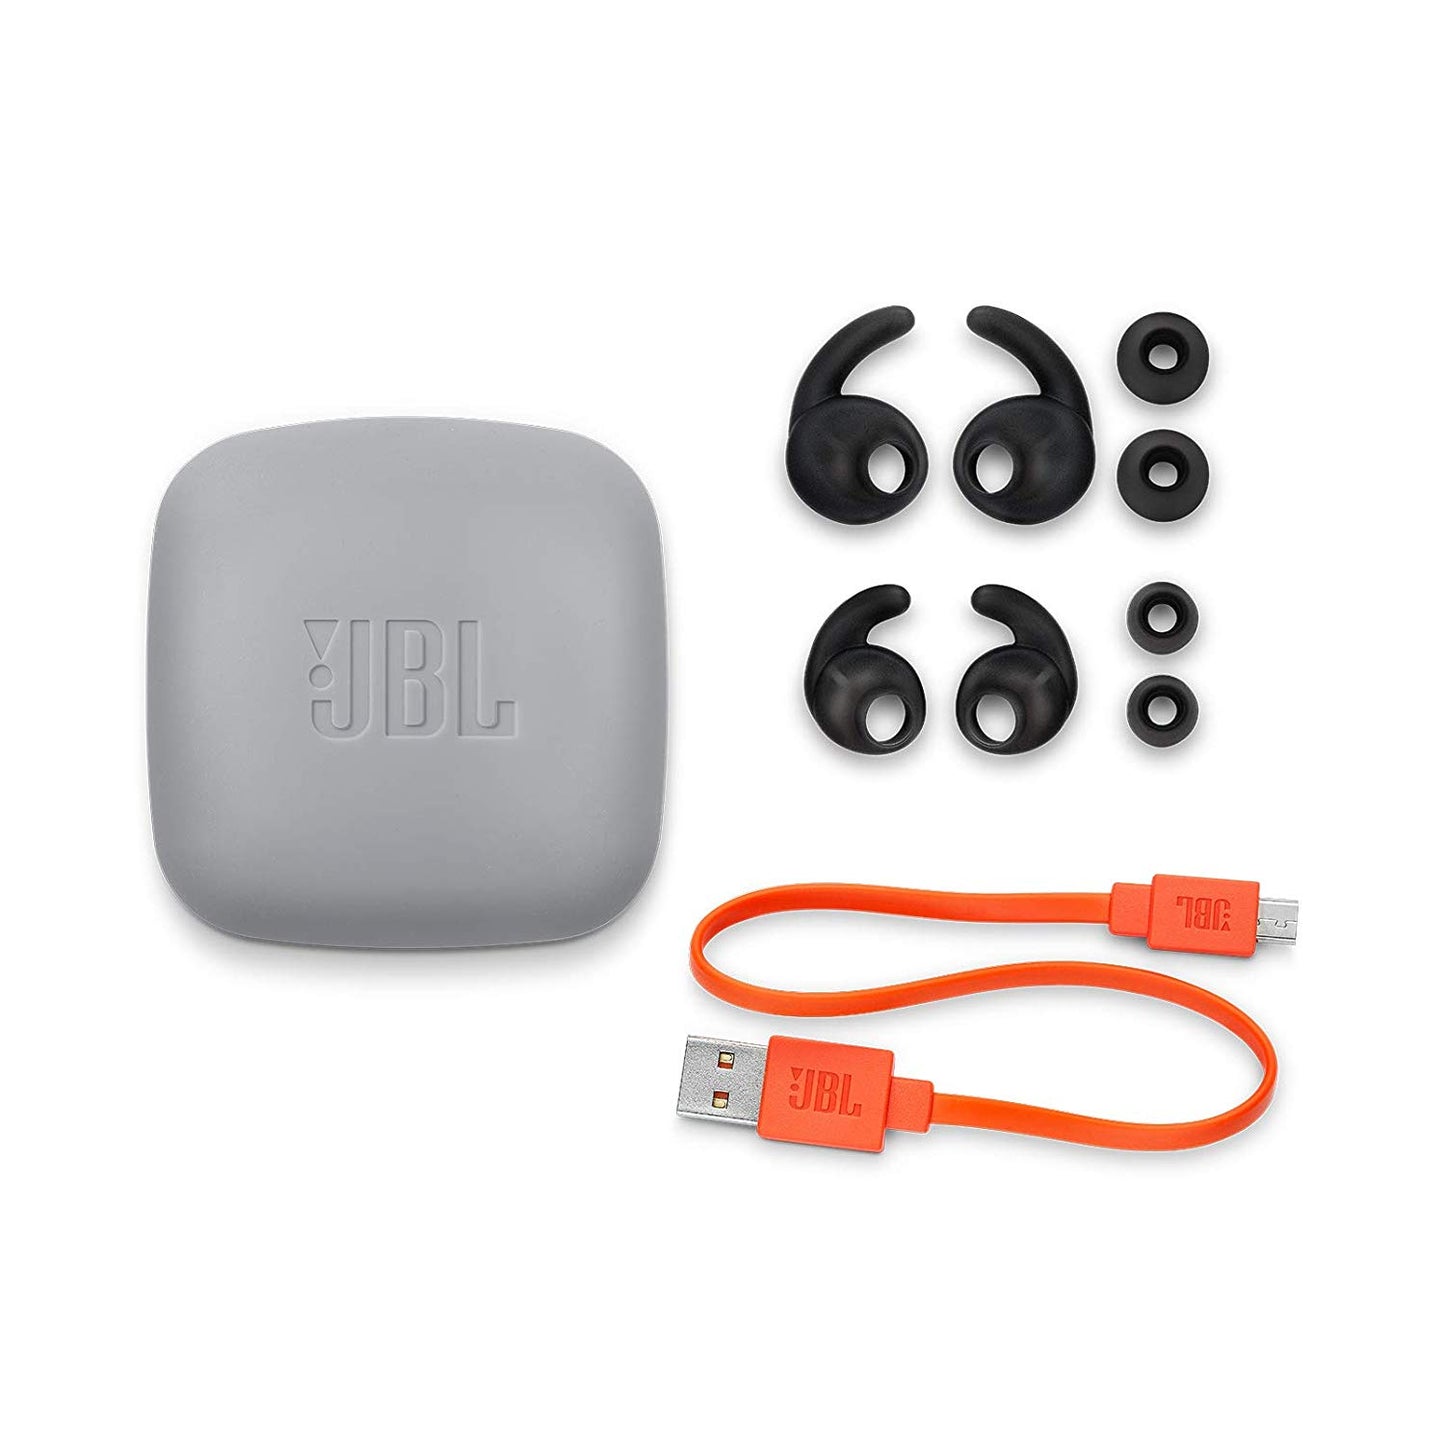 JBL Reflect Contour 2 In-Ear Secure Fit Wireless Sport Headphones, Black